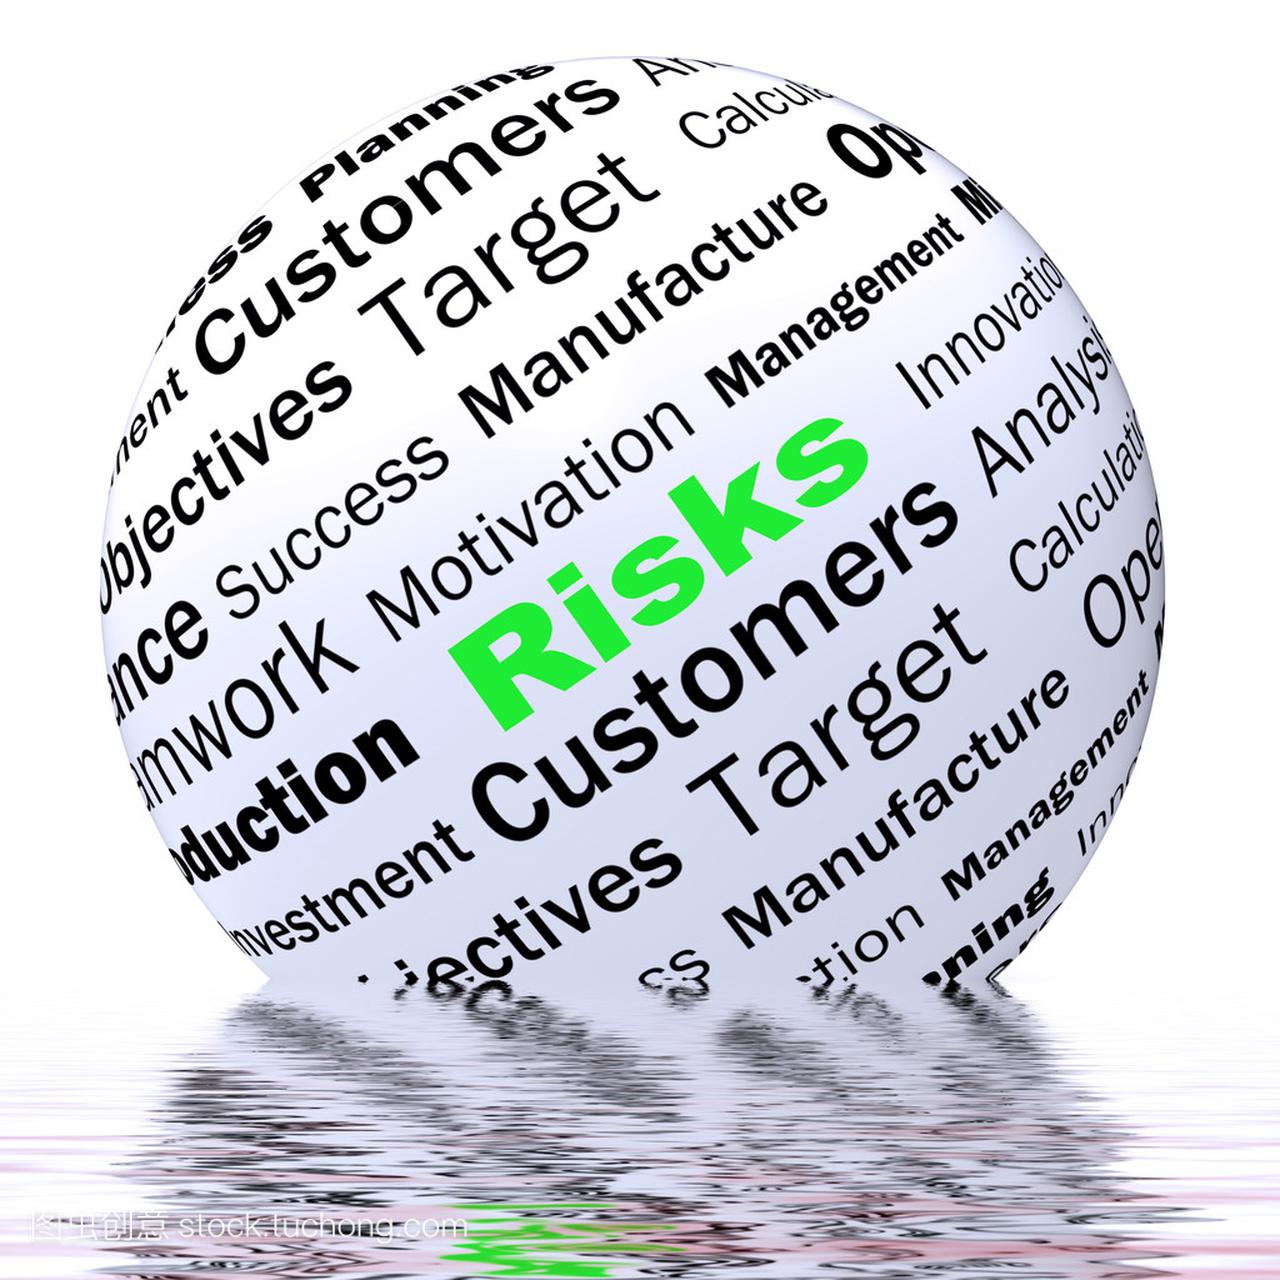 风险领域定义显示不安全和财务风险